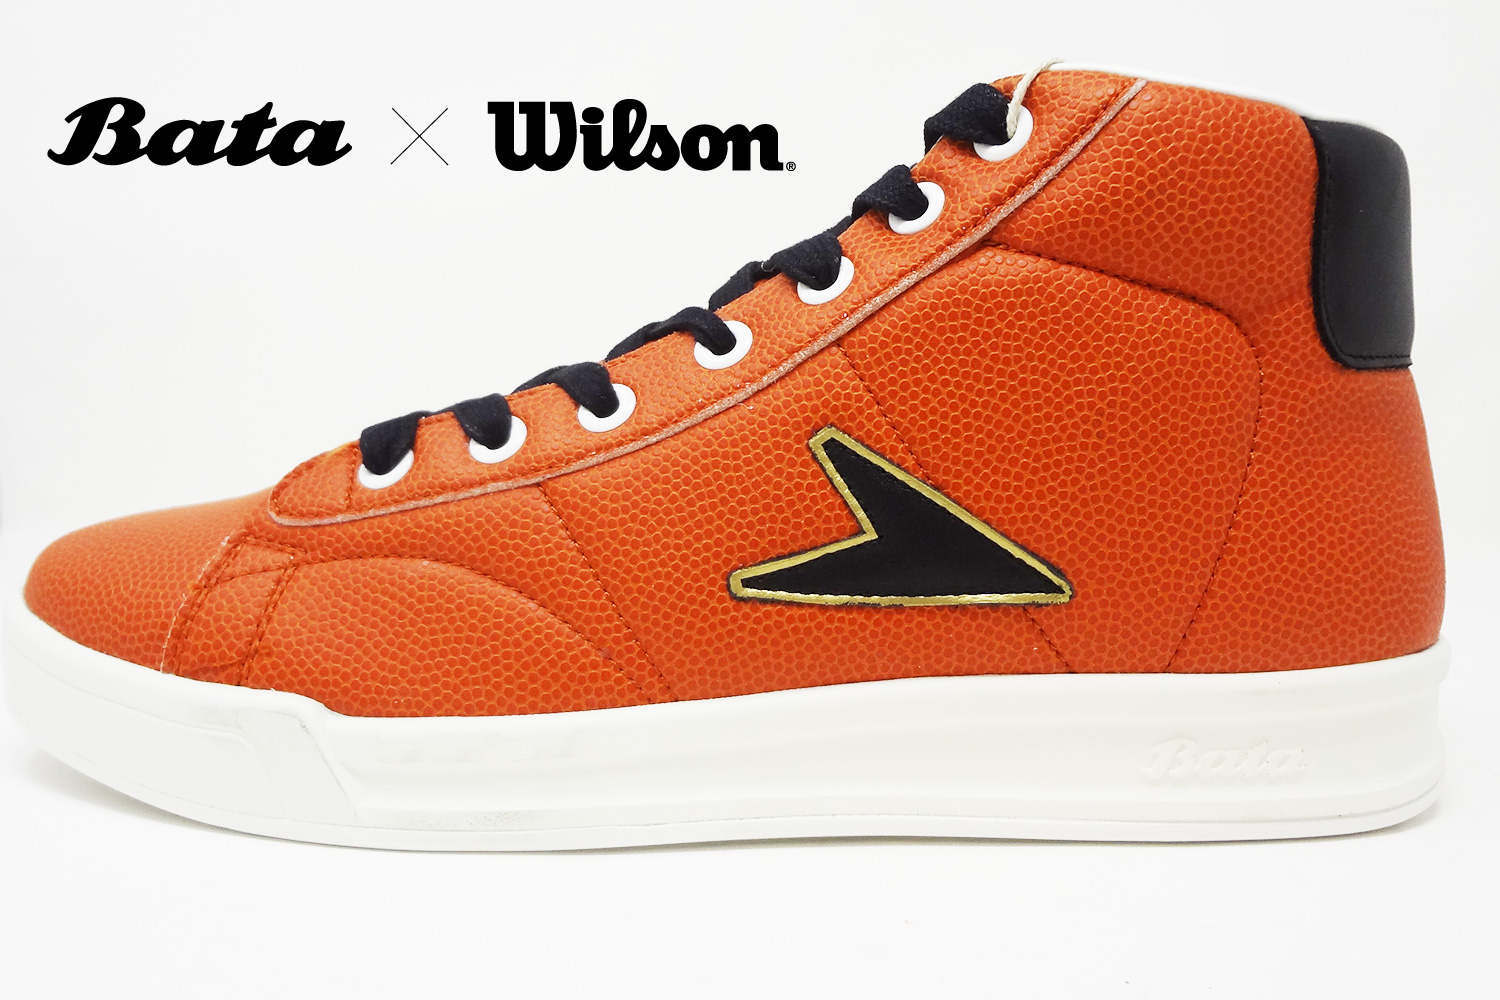 wilson bata shoes